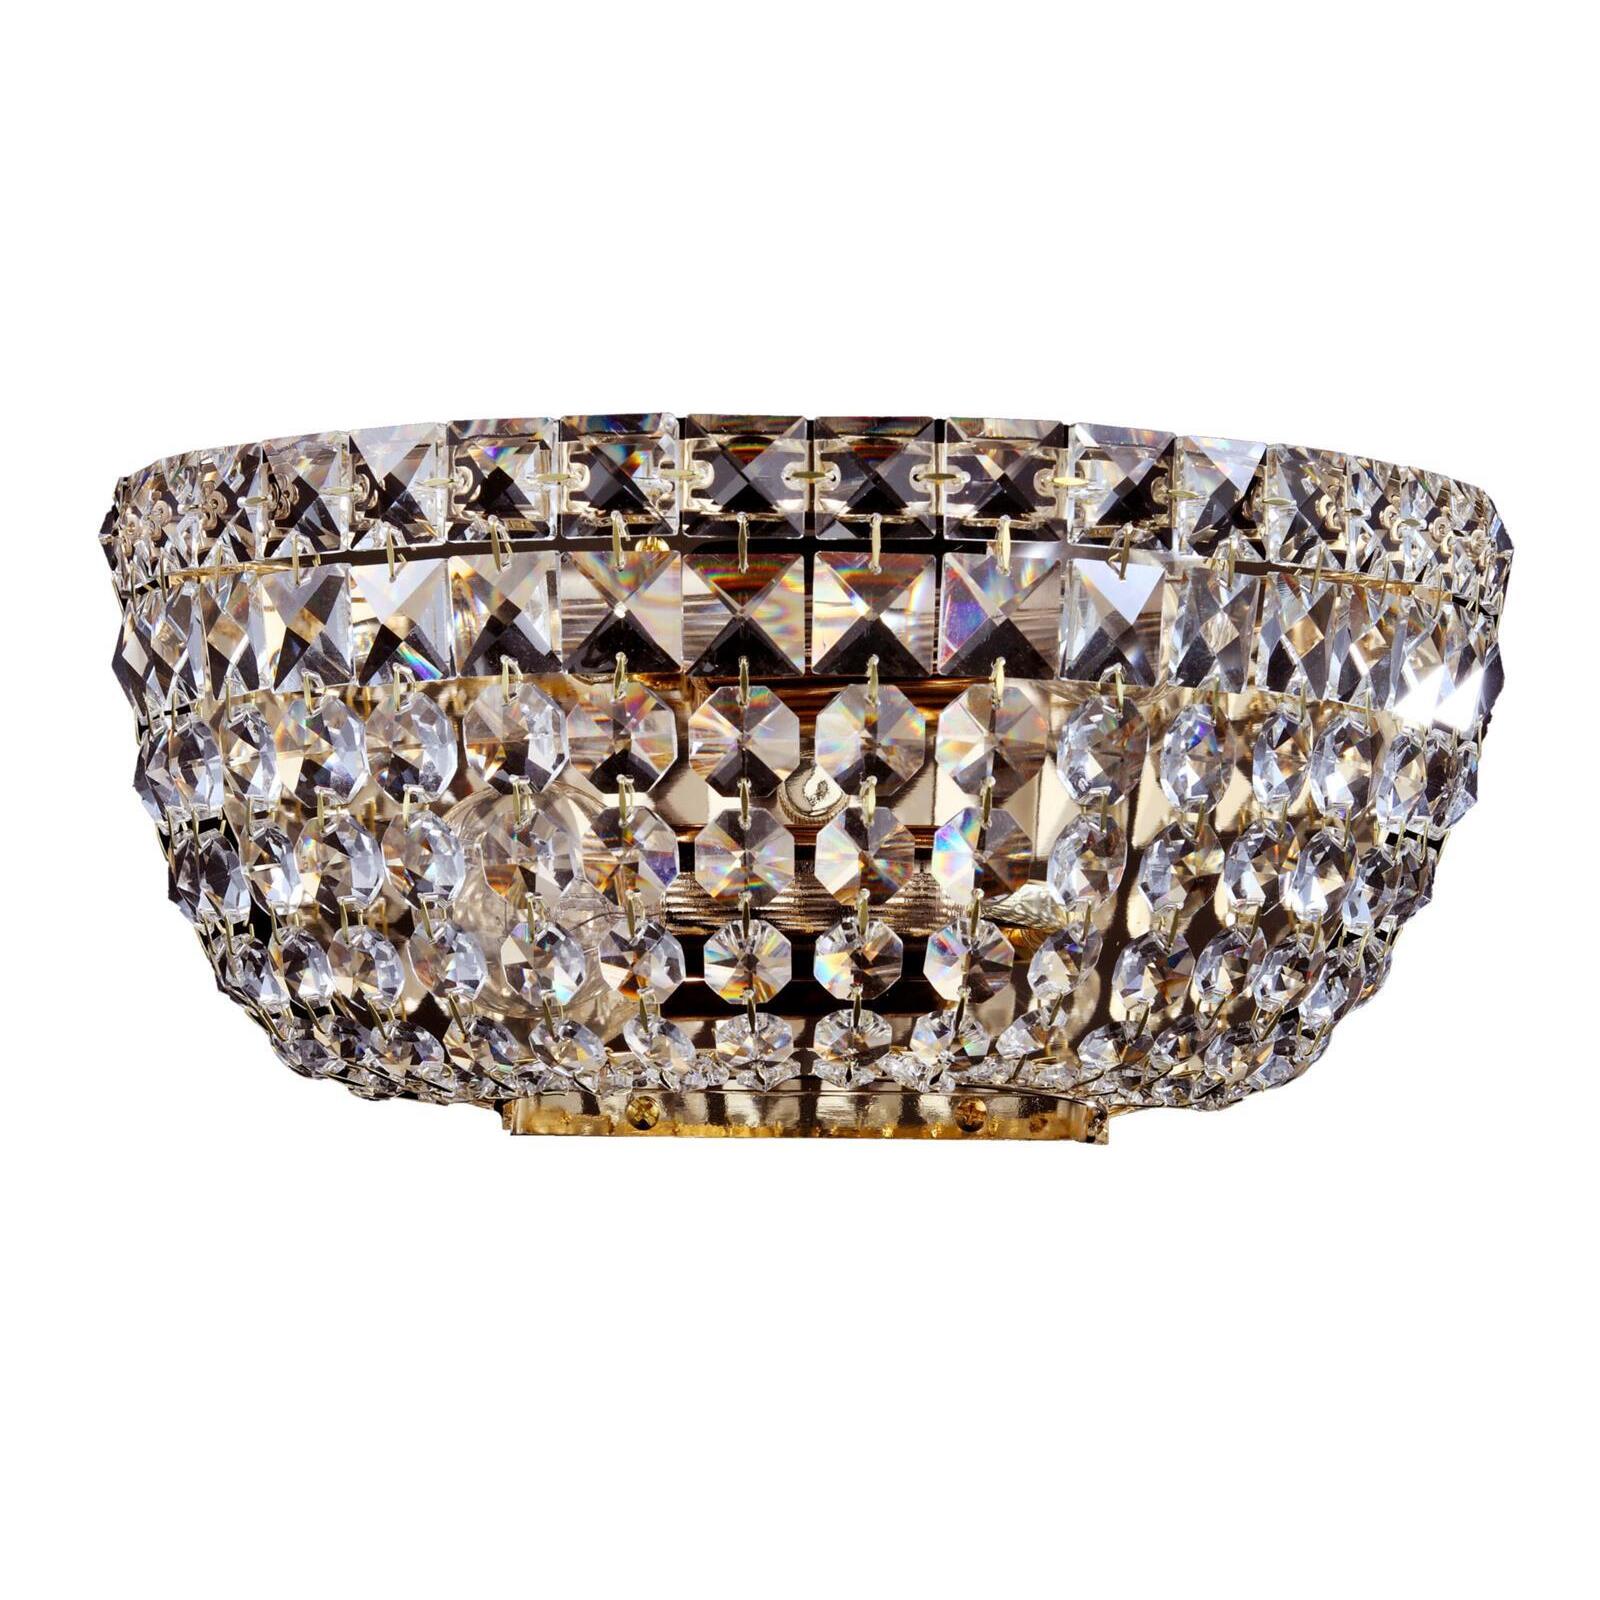 Basfor Kristall Wandleuchte gold antik E14 Lampen Onlineshop & - Leuchten Diamantform